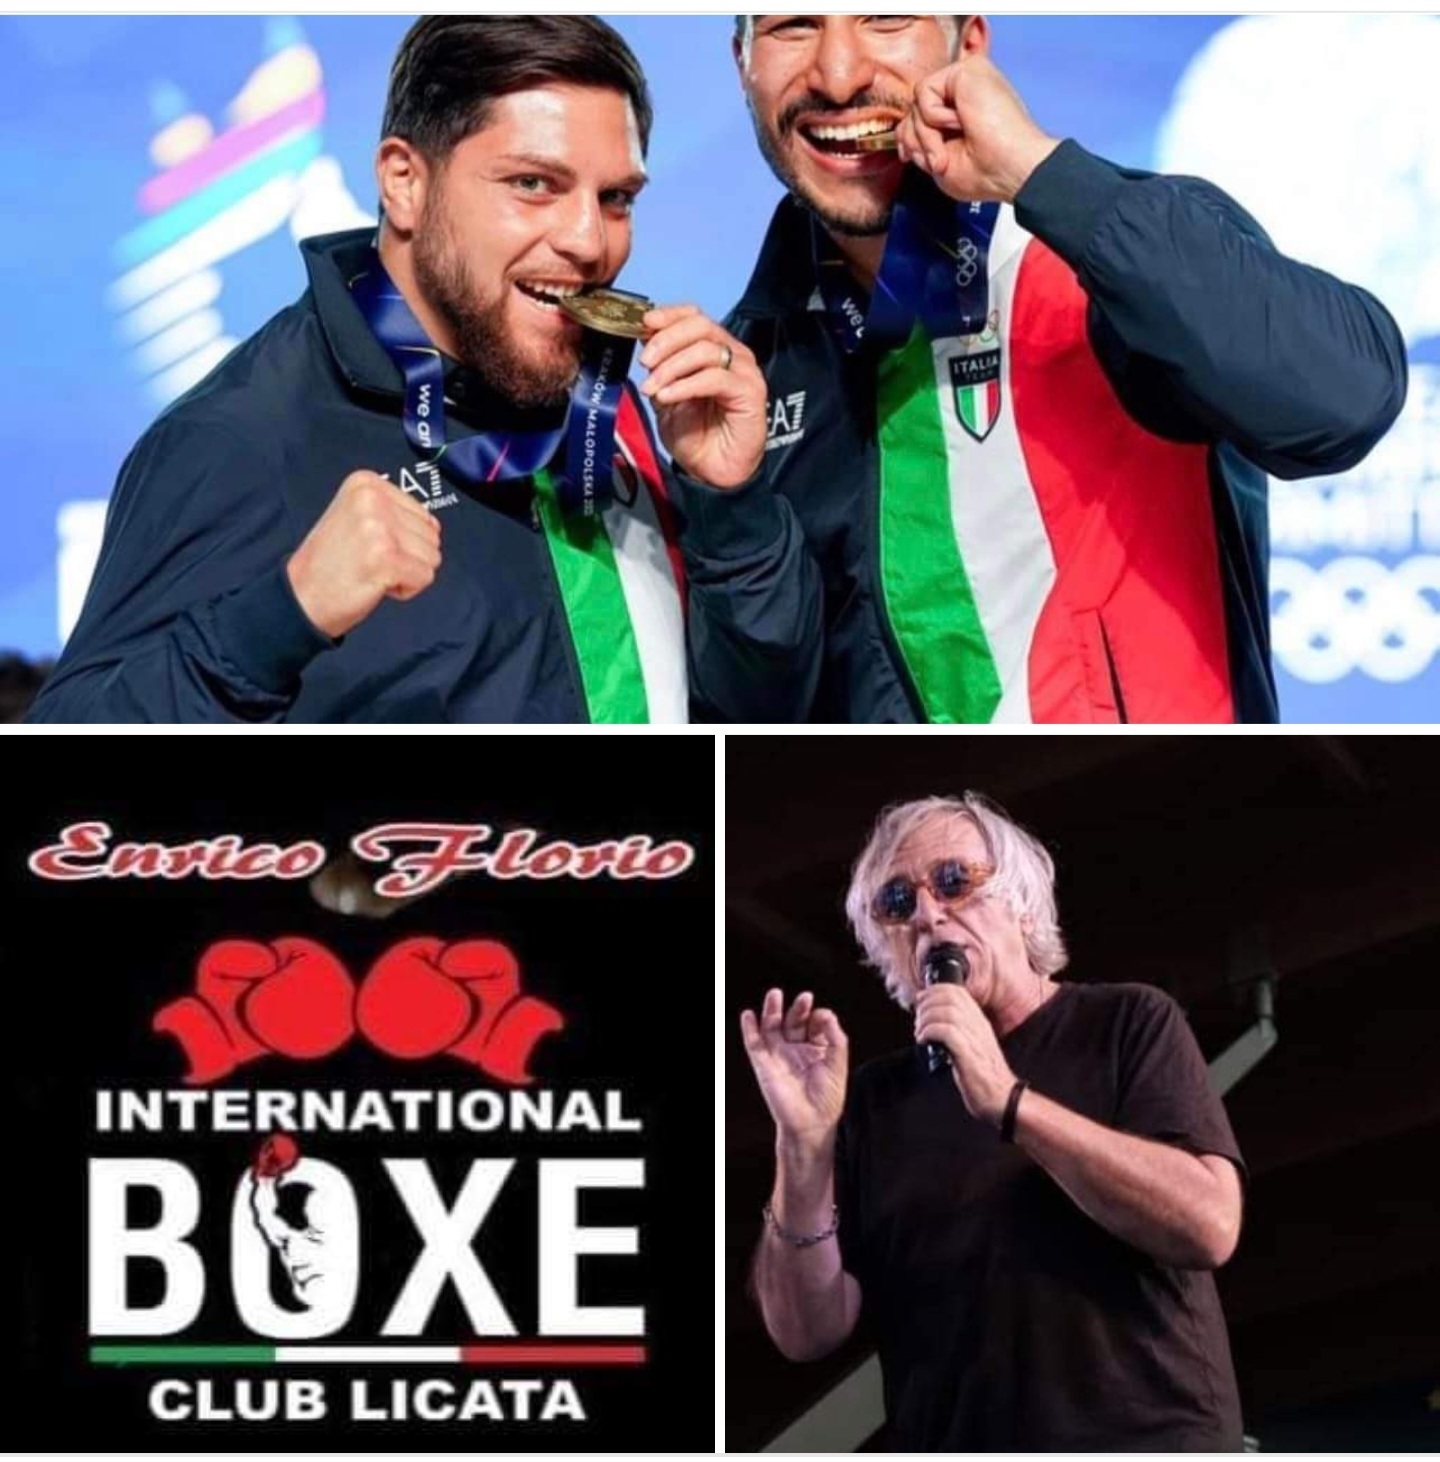 Boxe, i due campioni italiani Mouhiidine e Cavallaro domenica 10 dicembre a Licata